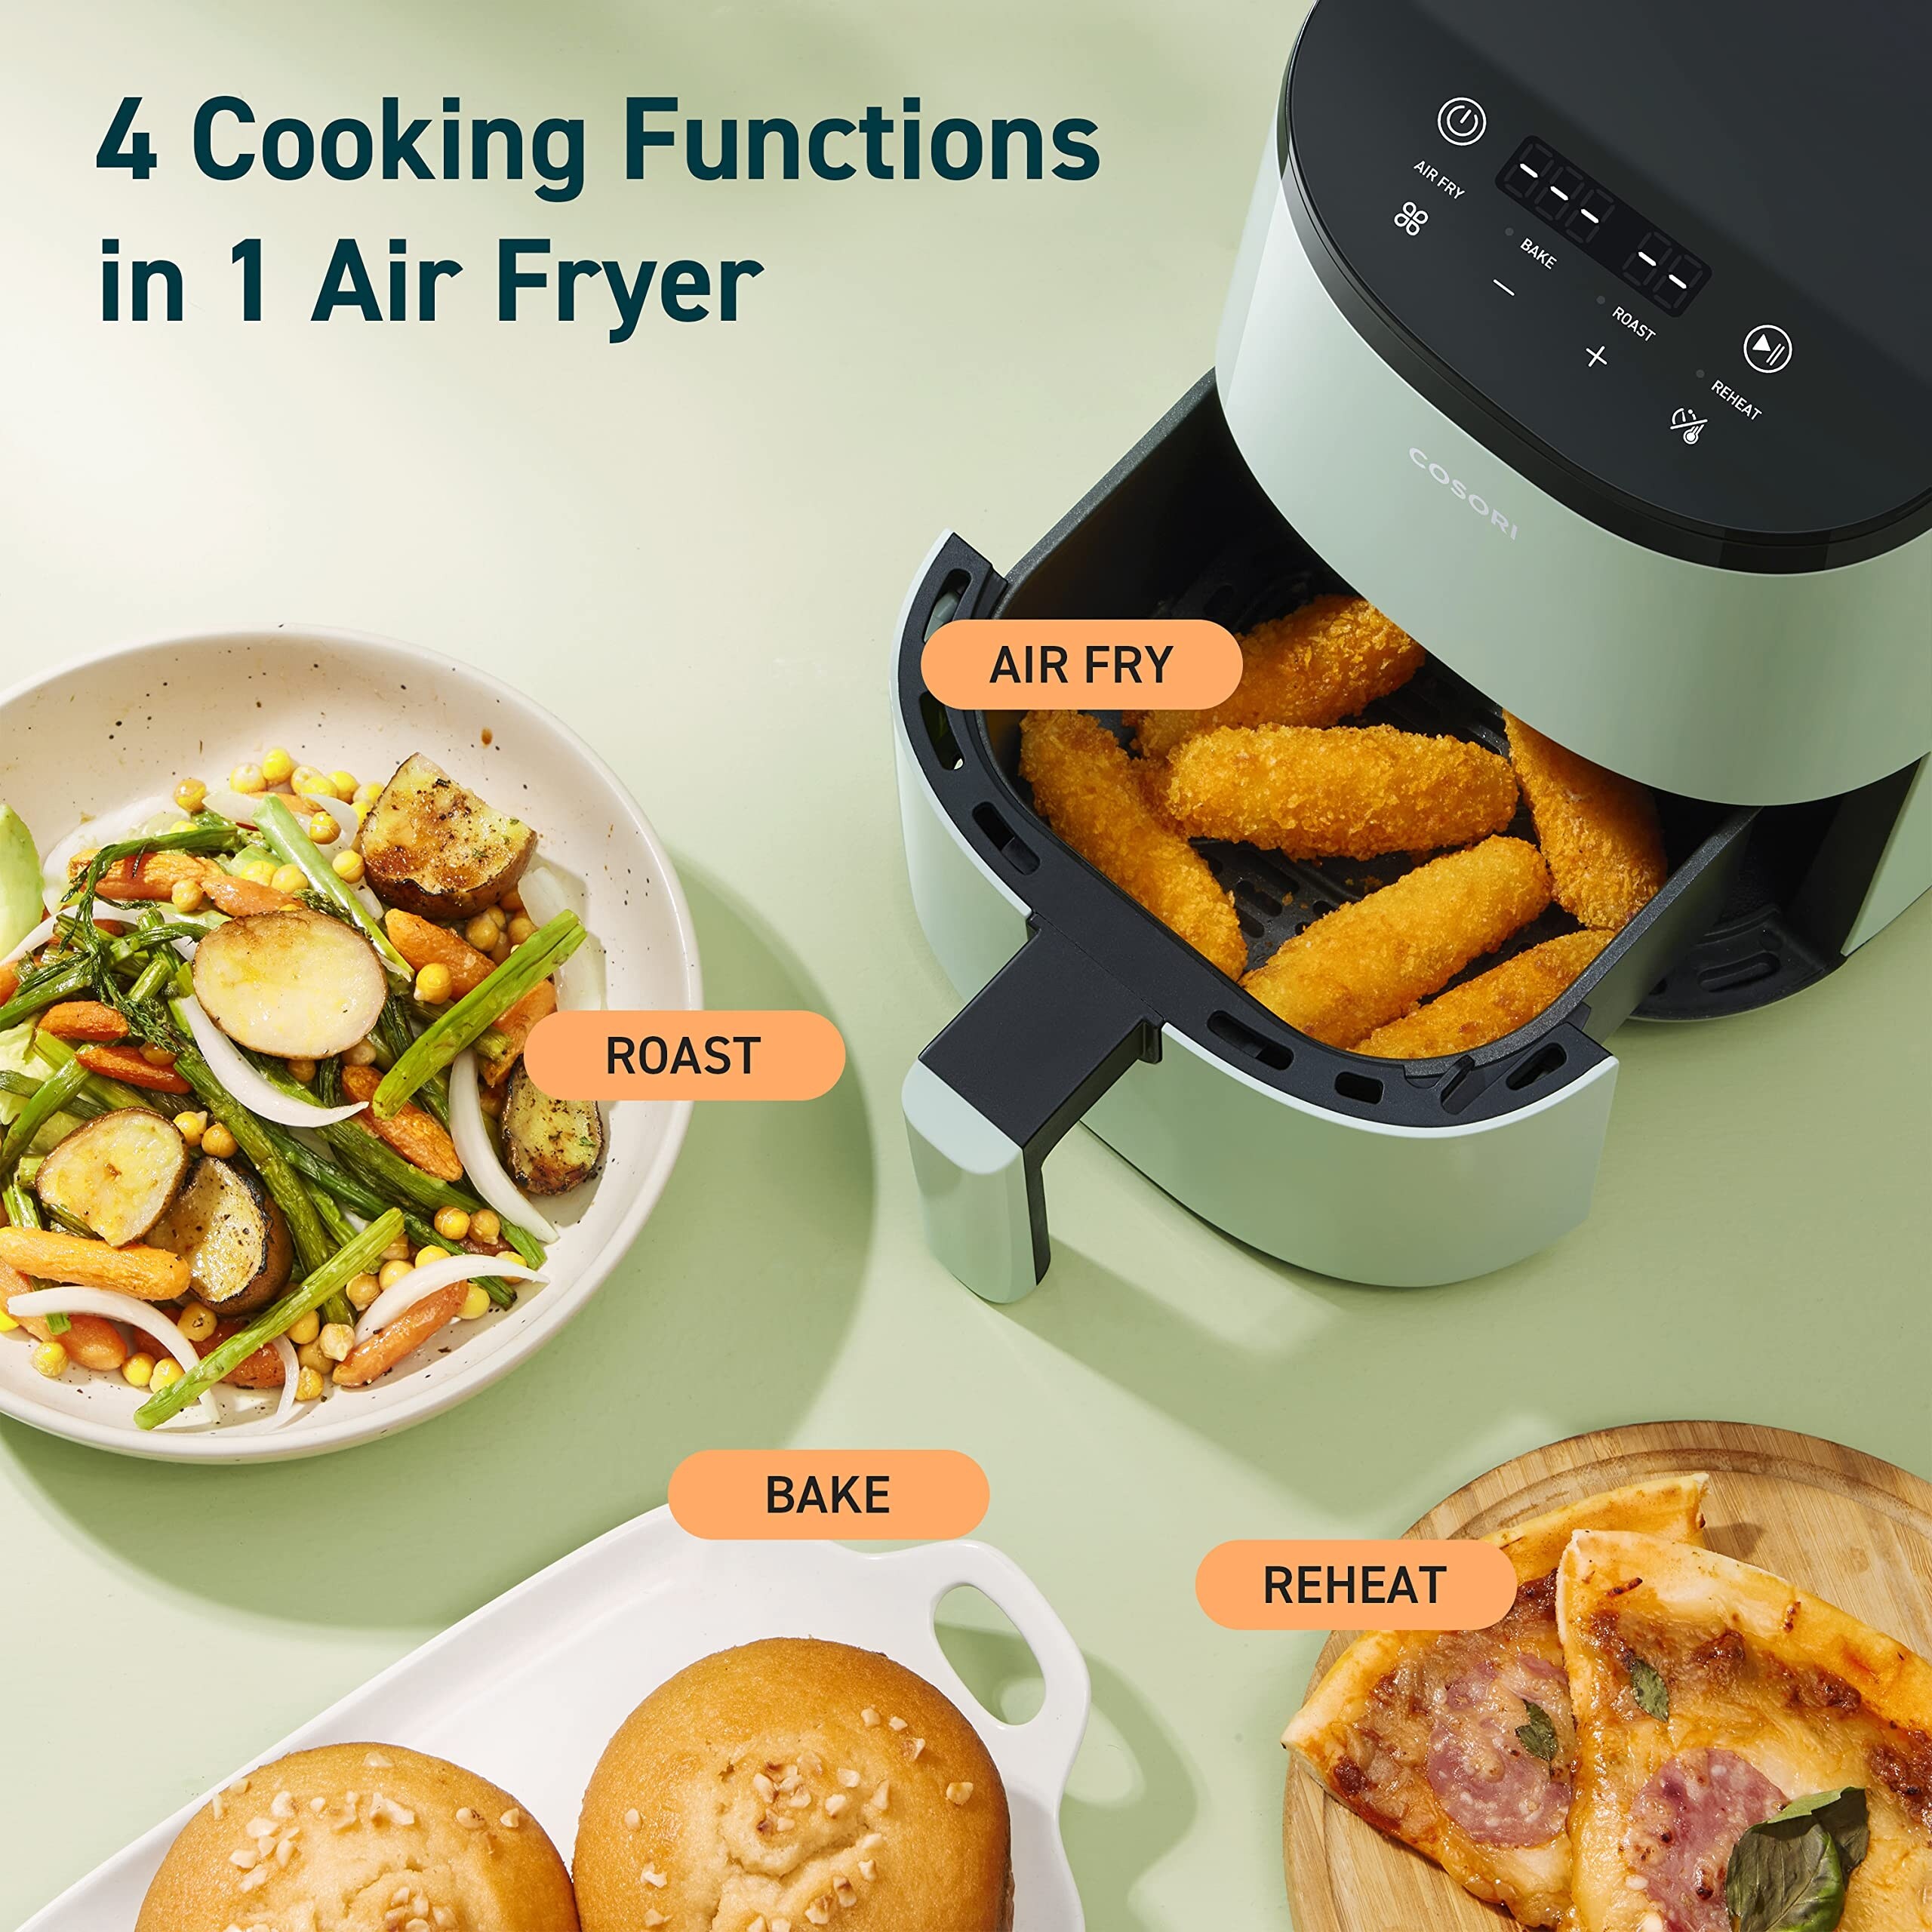 4 Quart Air Fryer with Reheat & Dehydrate, Black, Silver, AF100WM - Bed  Bath & Beyond - 36496627